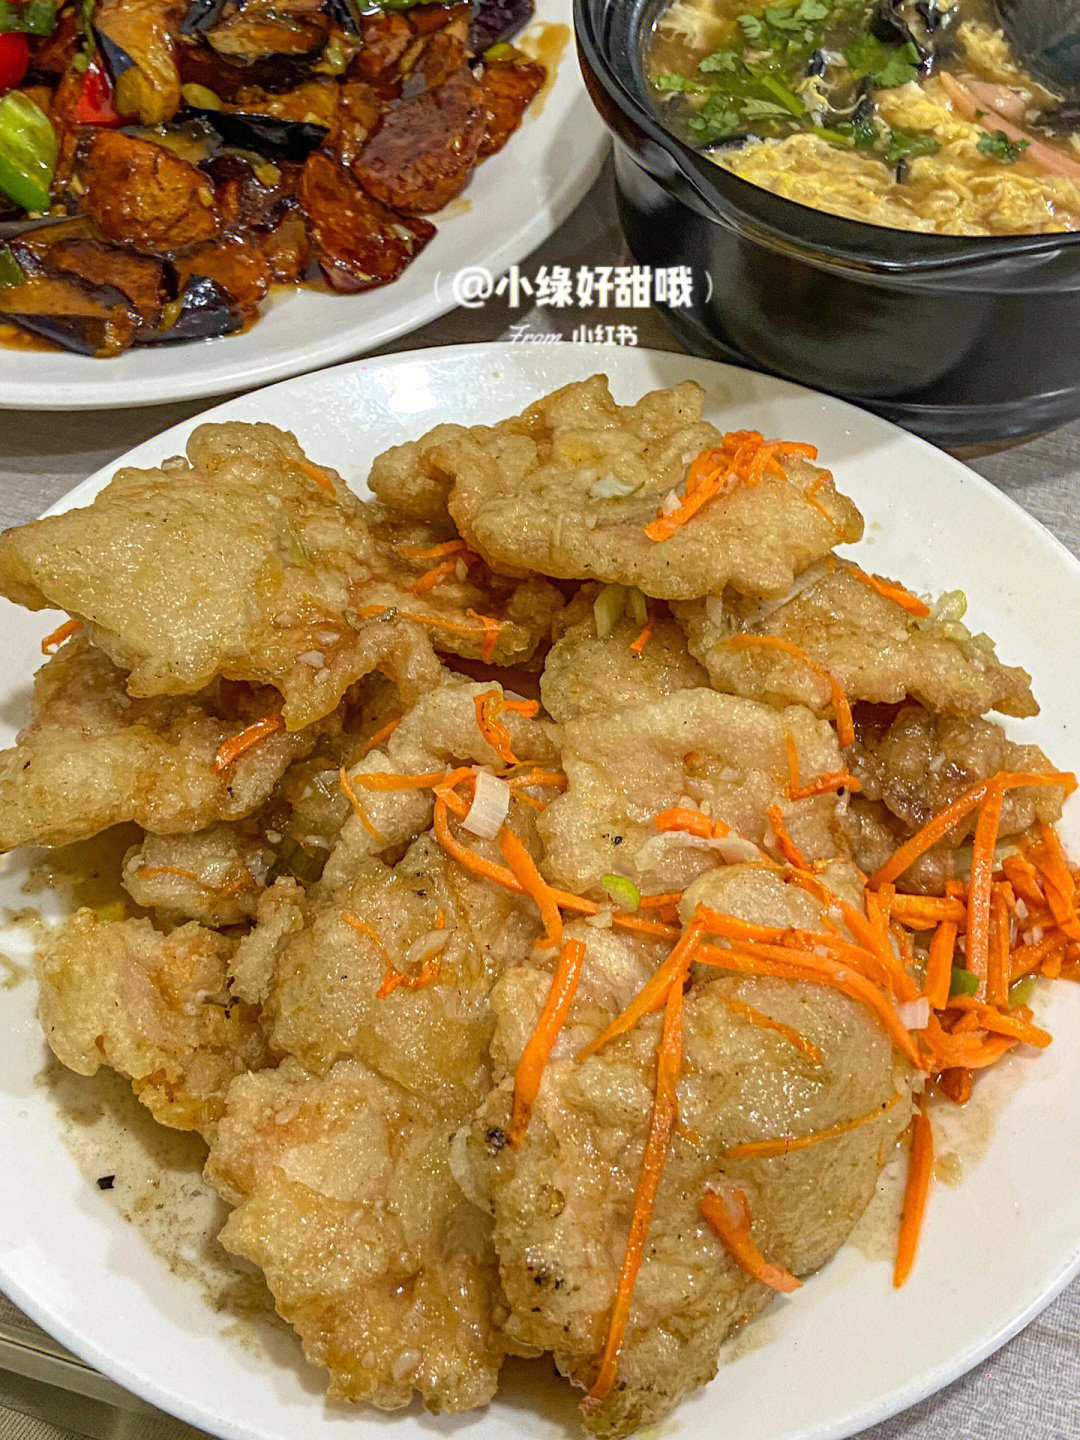 天津美食居民区超好吃的东北菜馆1